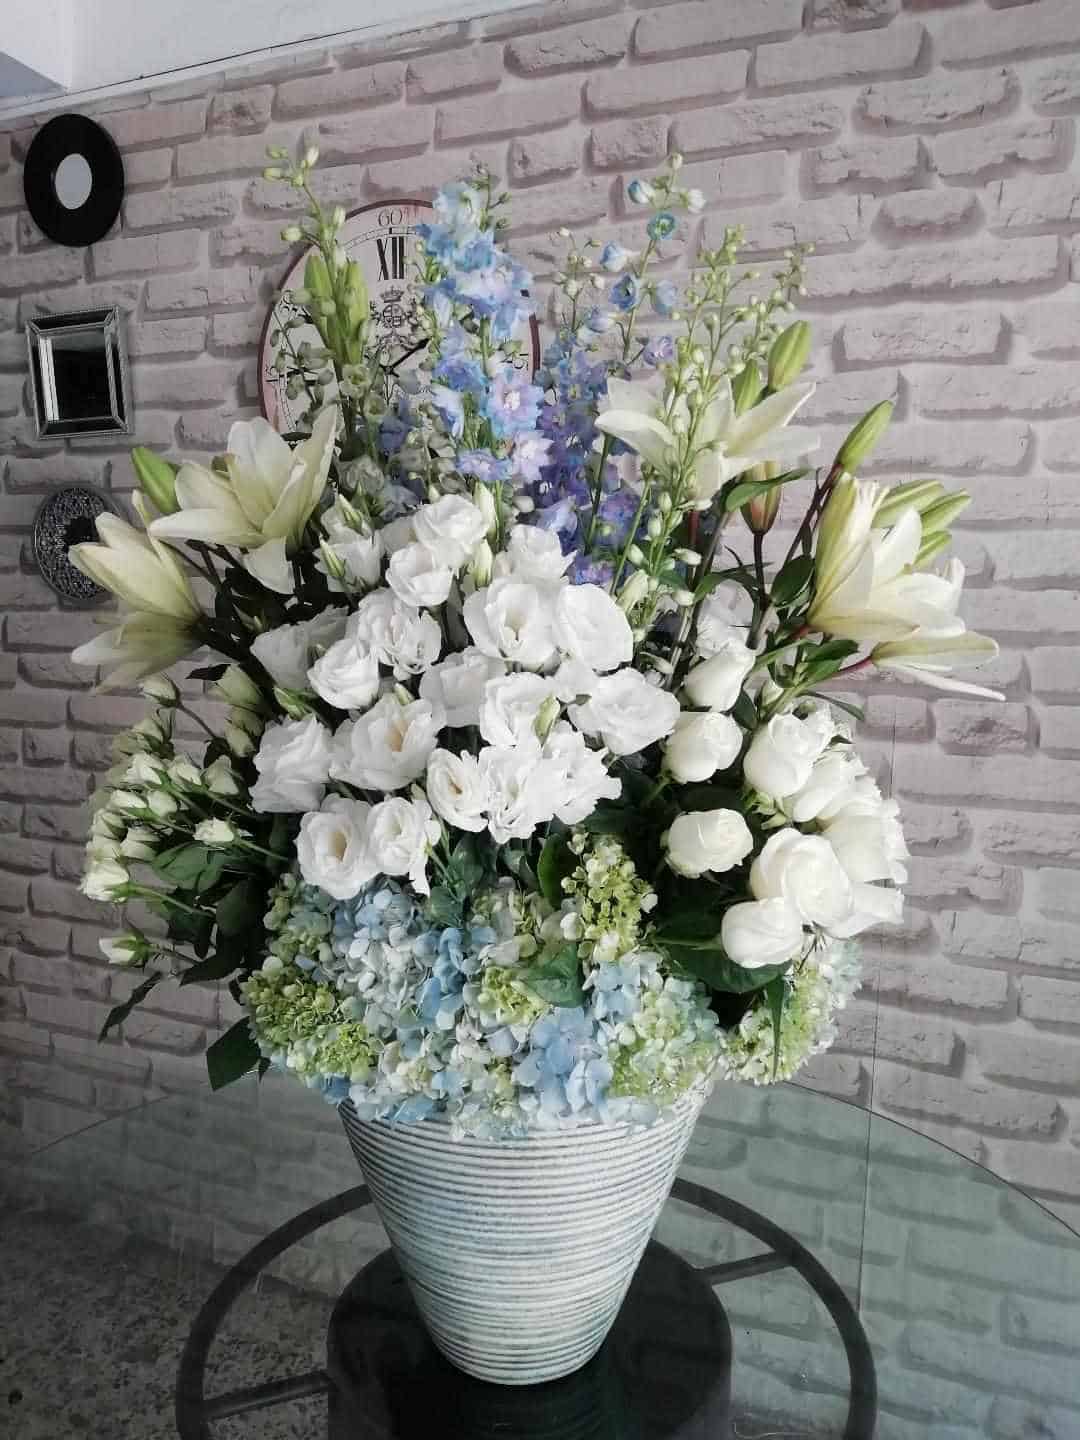 Enviamos flores elegantes a domcilio by Annafiori